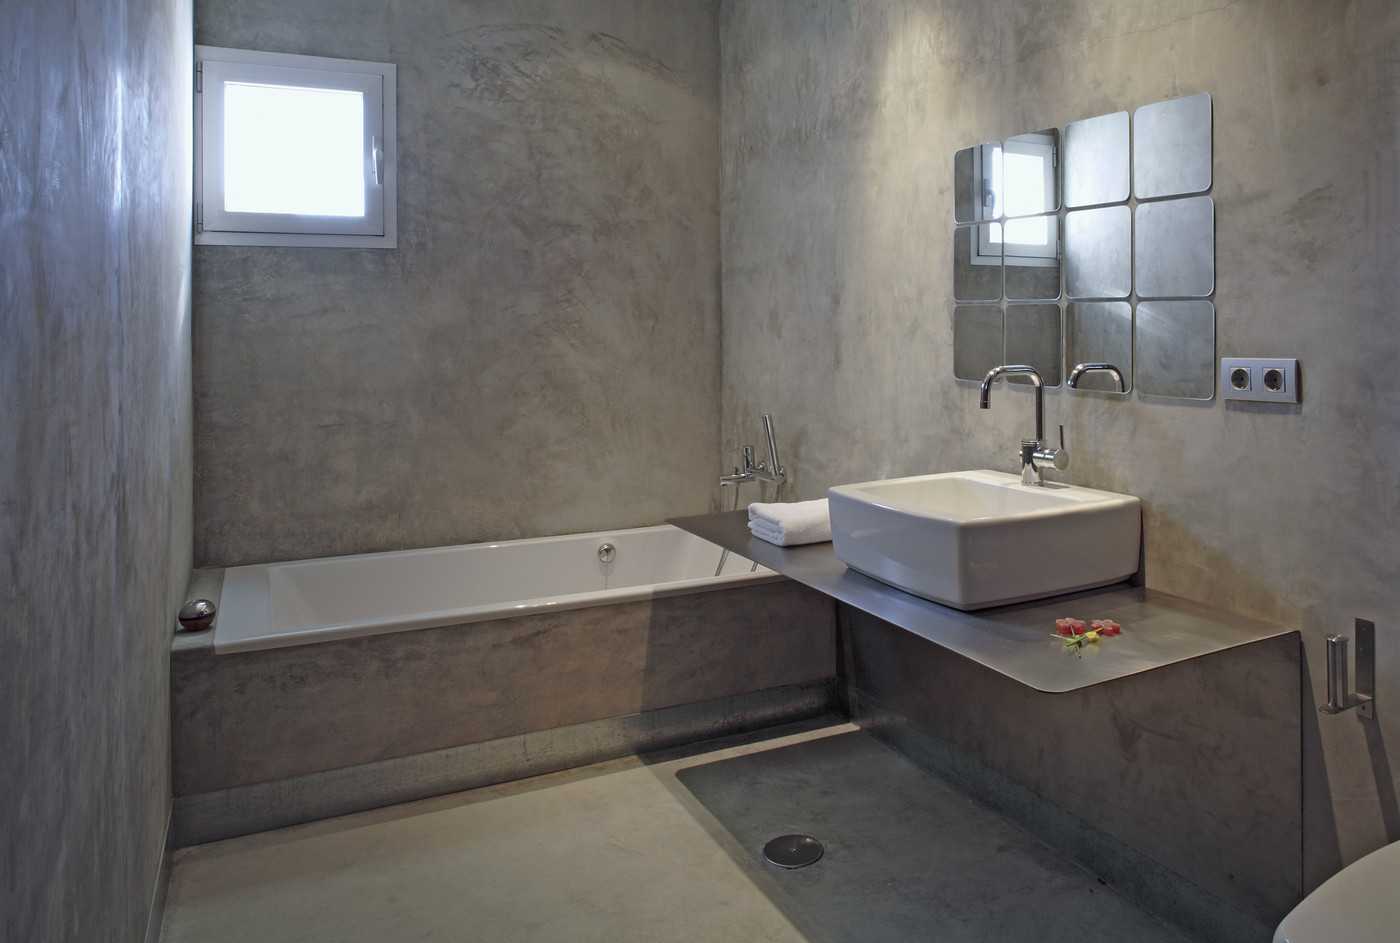 Как штукатурить стены в ванной: виды штукатурок, можно ли клеить плитку на гипсовую штукатурку